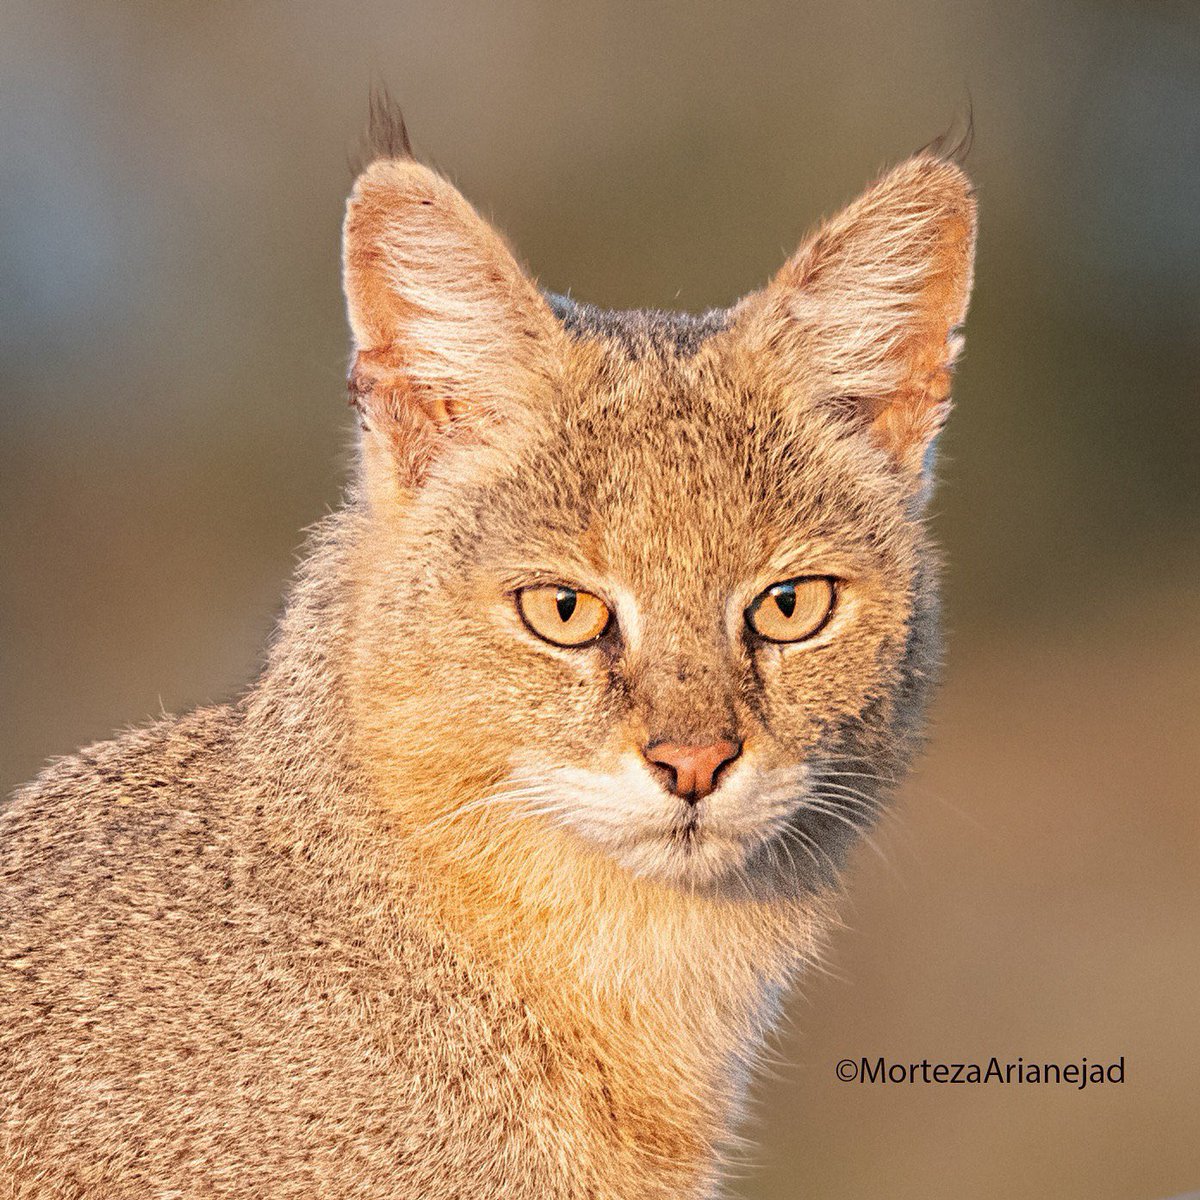 پرتره‌ی زیبا از گربه‌ی جنگلی، هرمزگان

عکس از مرتضی آریانژاد